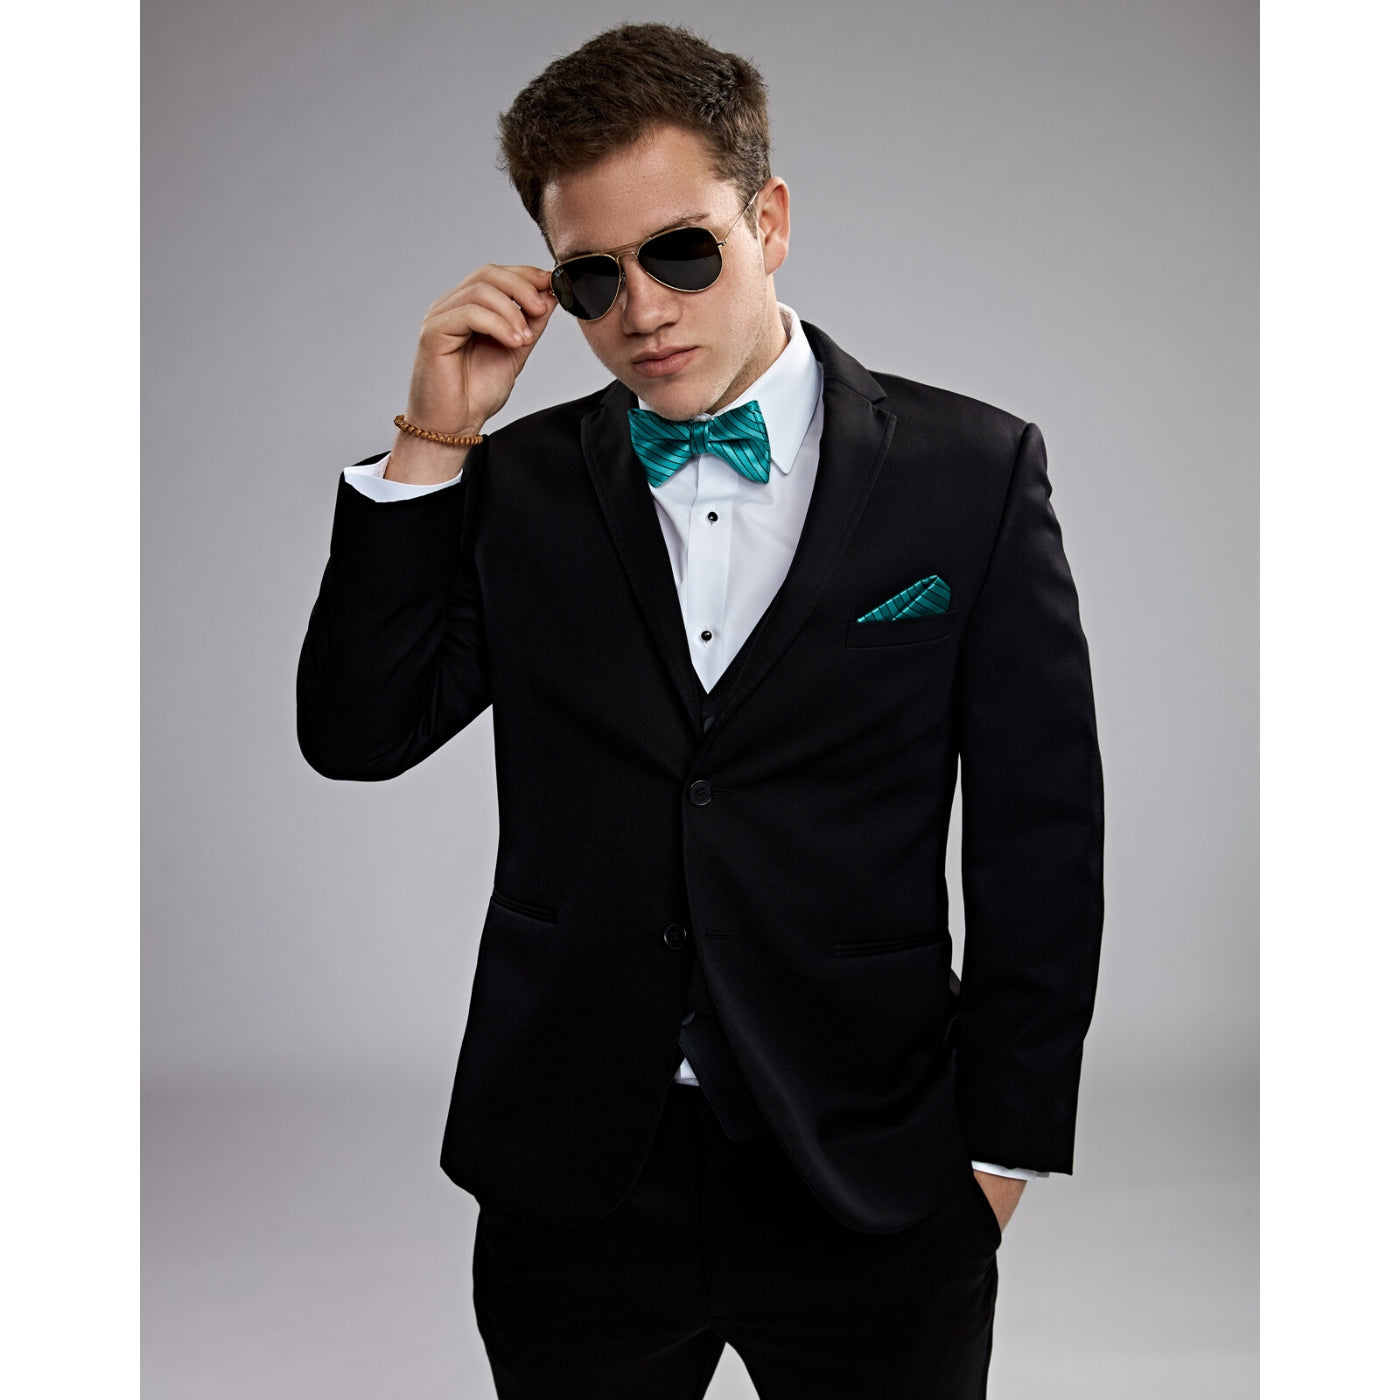 Michael Kors Sterling Wedding Suit Slim Fit Suit